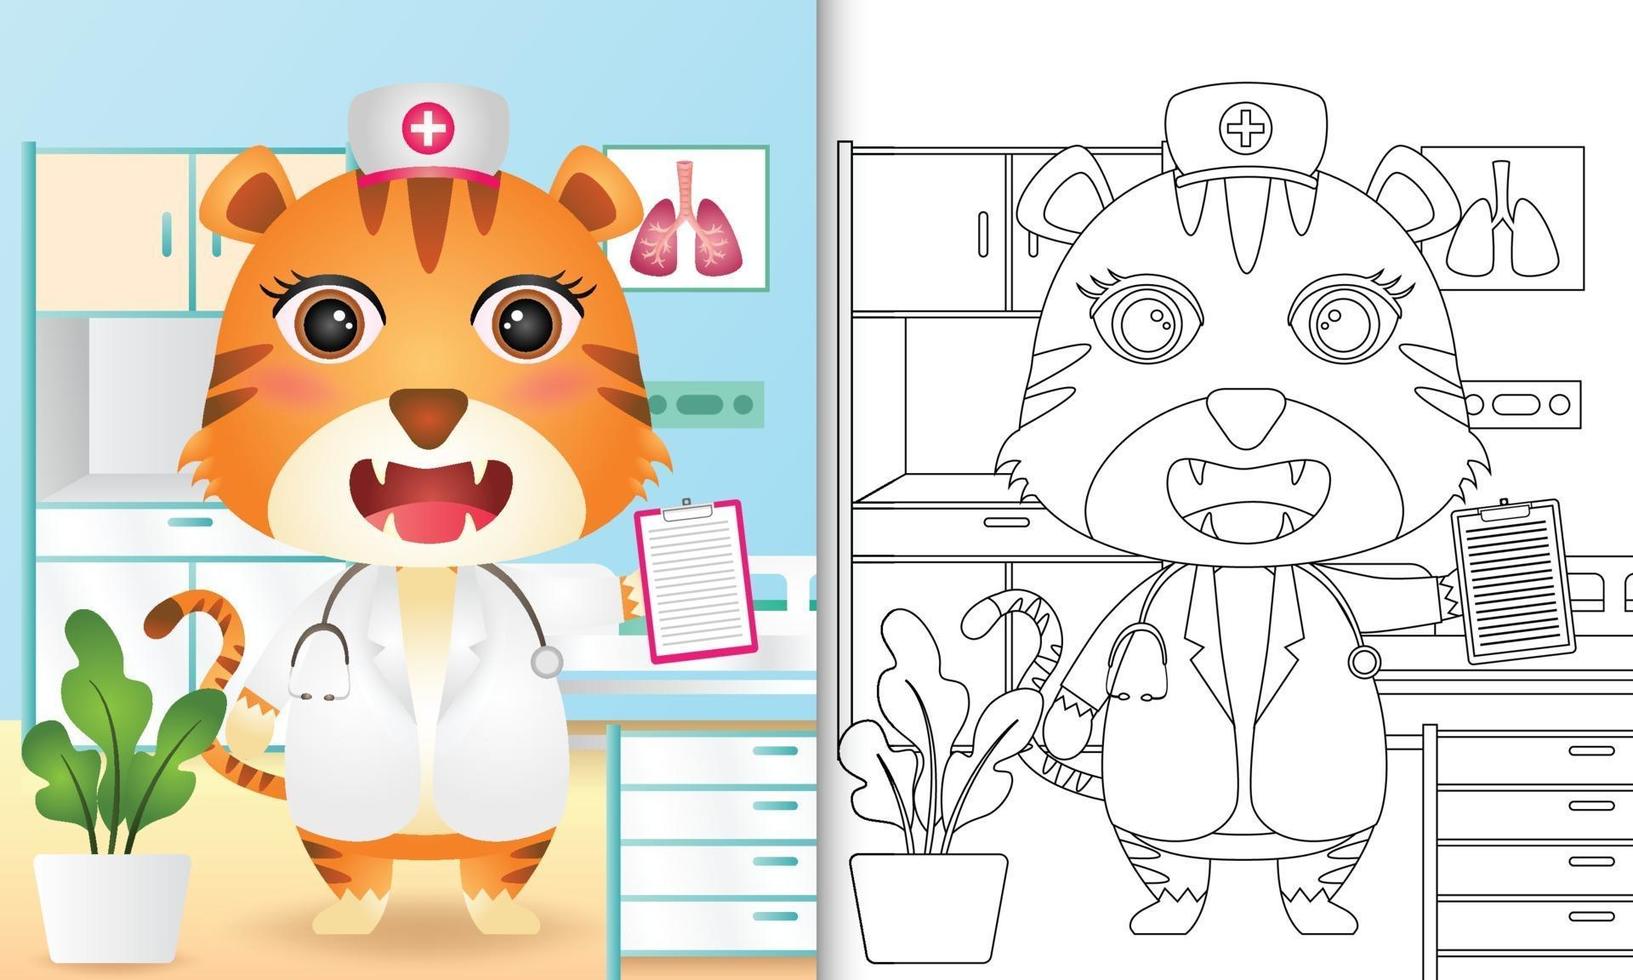 livro de colorir para crianças com uma ilustração do personagem bonito enfermeira tigre vetor